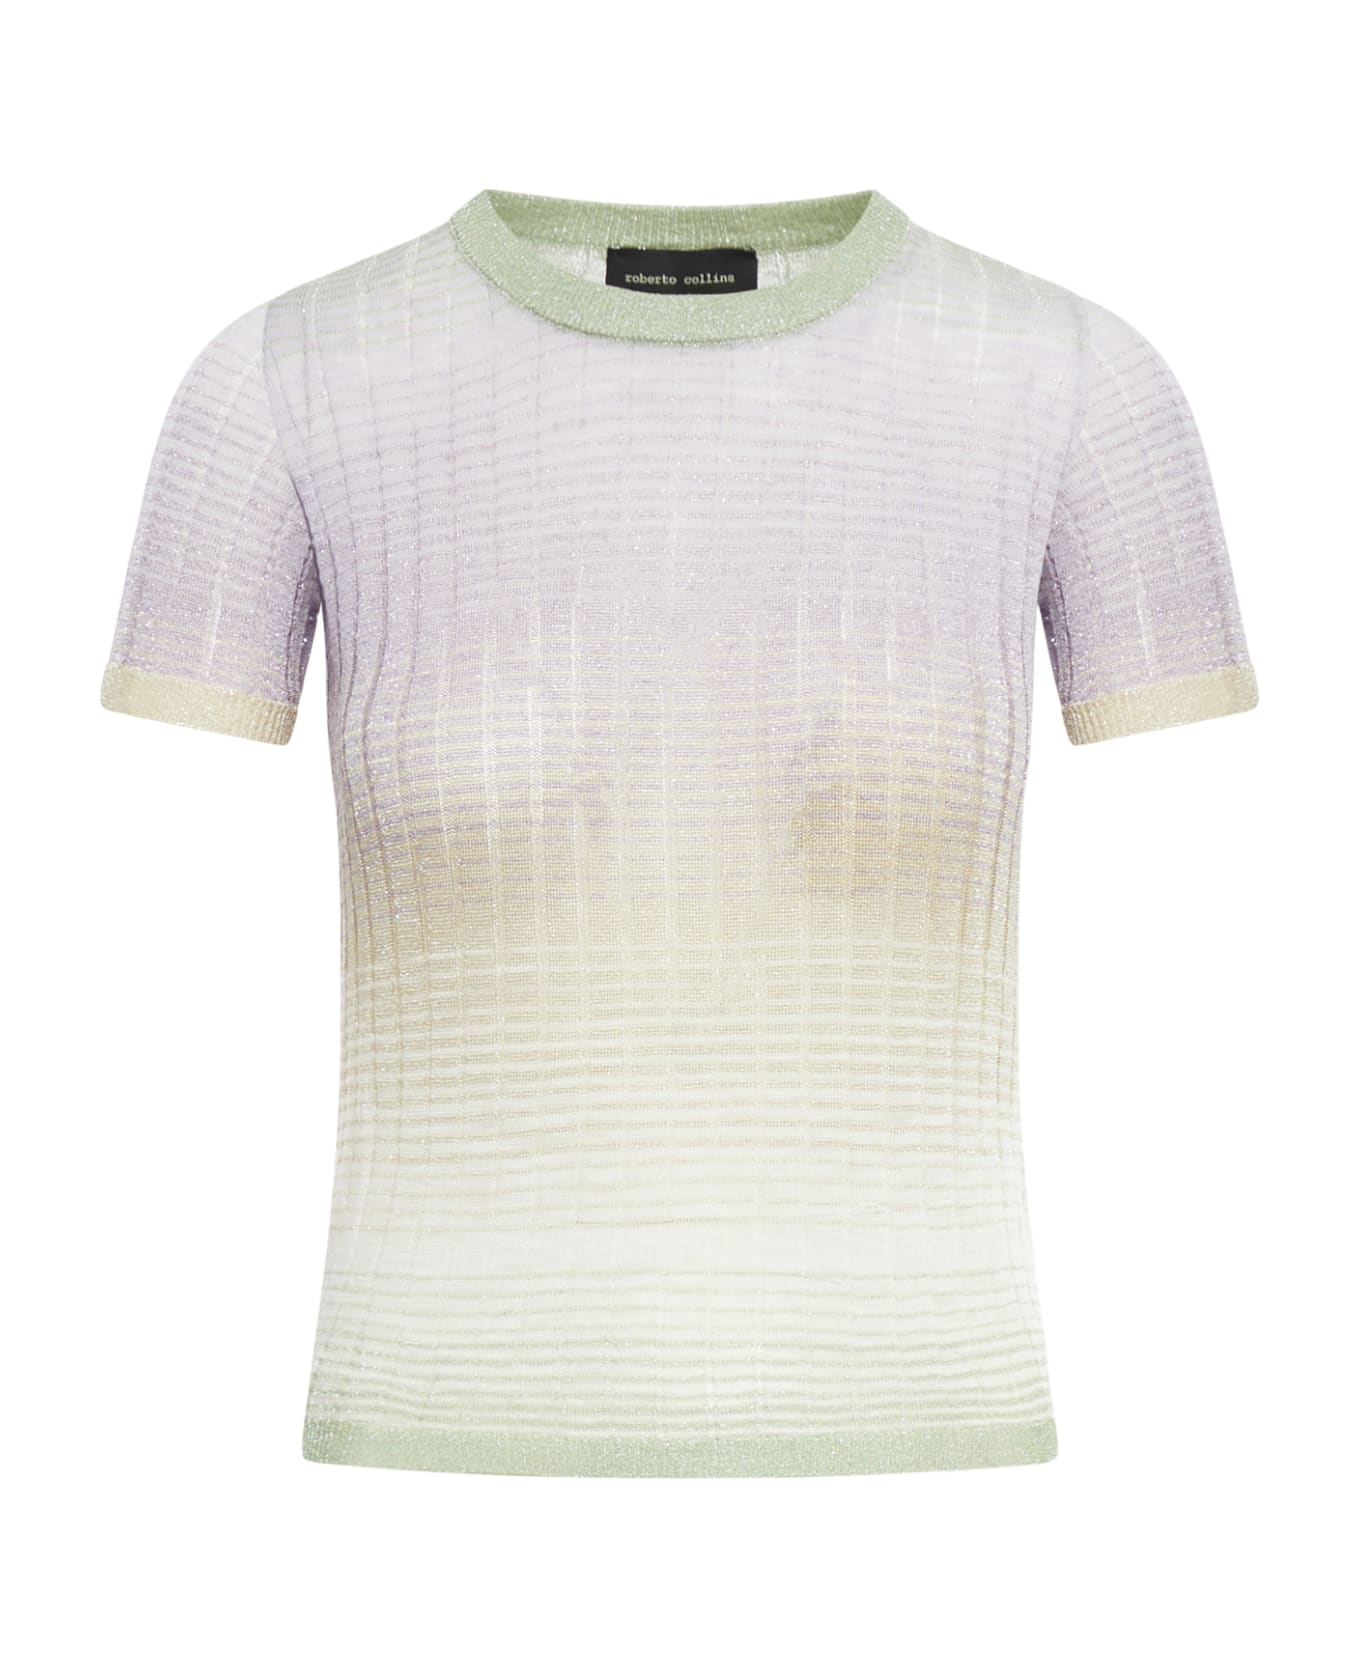 Roberto Collina Crewneck Ss - Acqua White Tシャツ